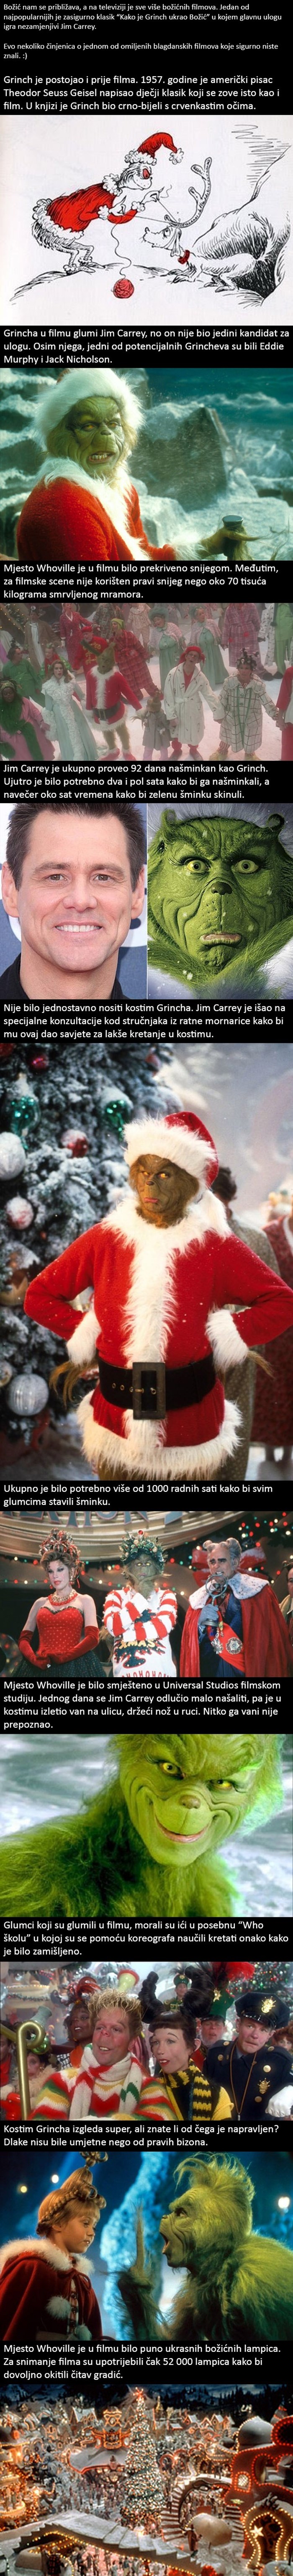 Kako je Grinch ukrao Božić? Pročitajte 10 zanimljivosti o filmu sa mrzovoljnim zelenim stvorom!